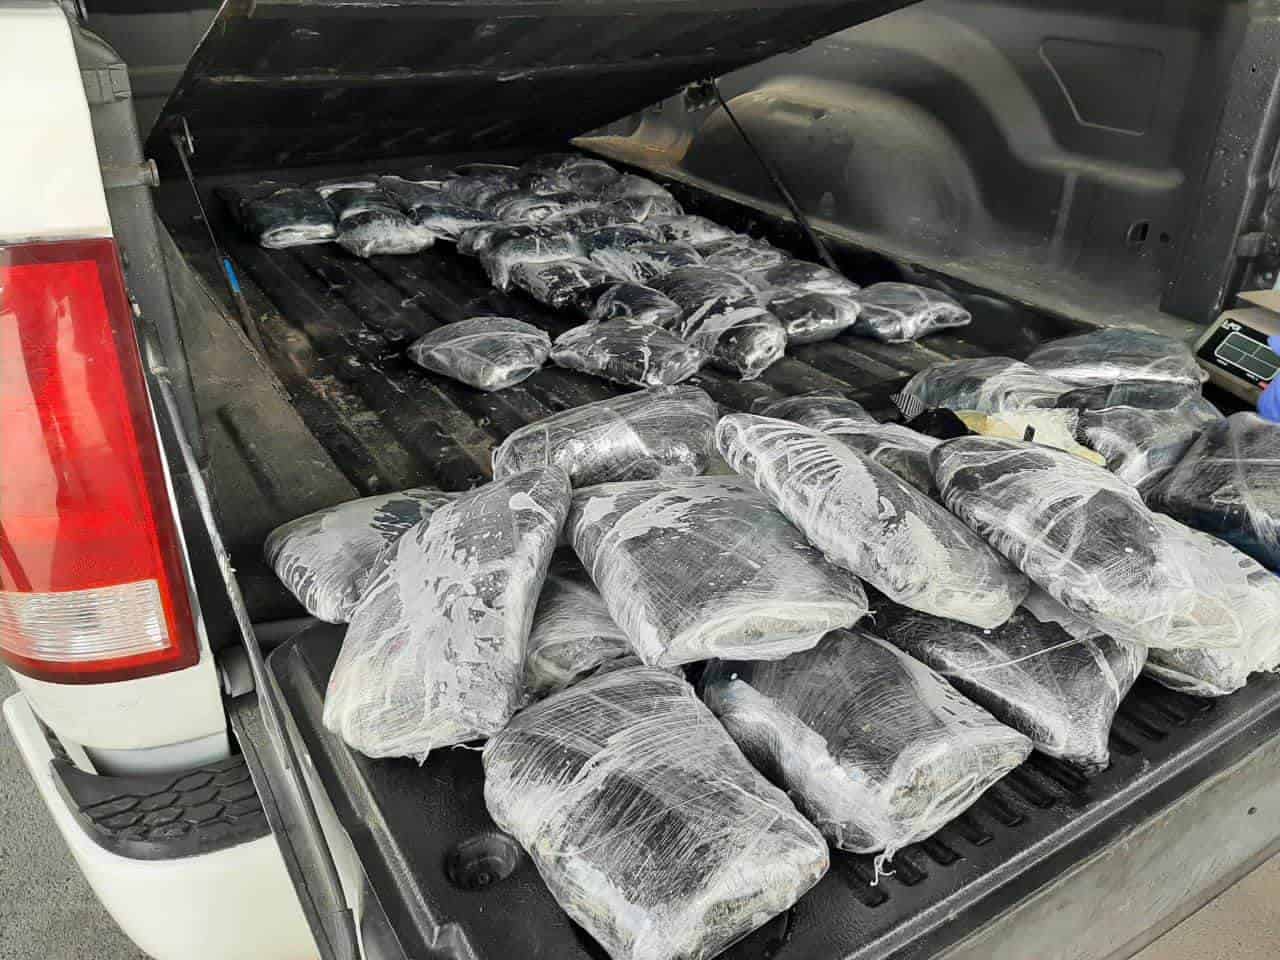 El conductor de una camioneta fue detenido luego de que le encontraron 60 kilos de metanfetamina, en el municipio de Linares.